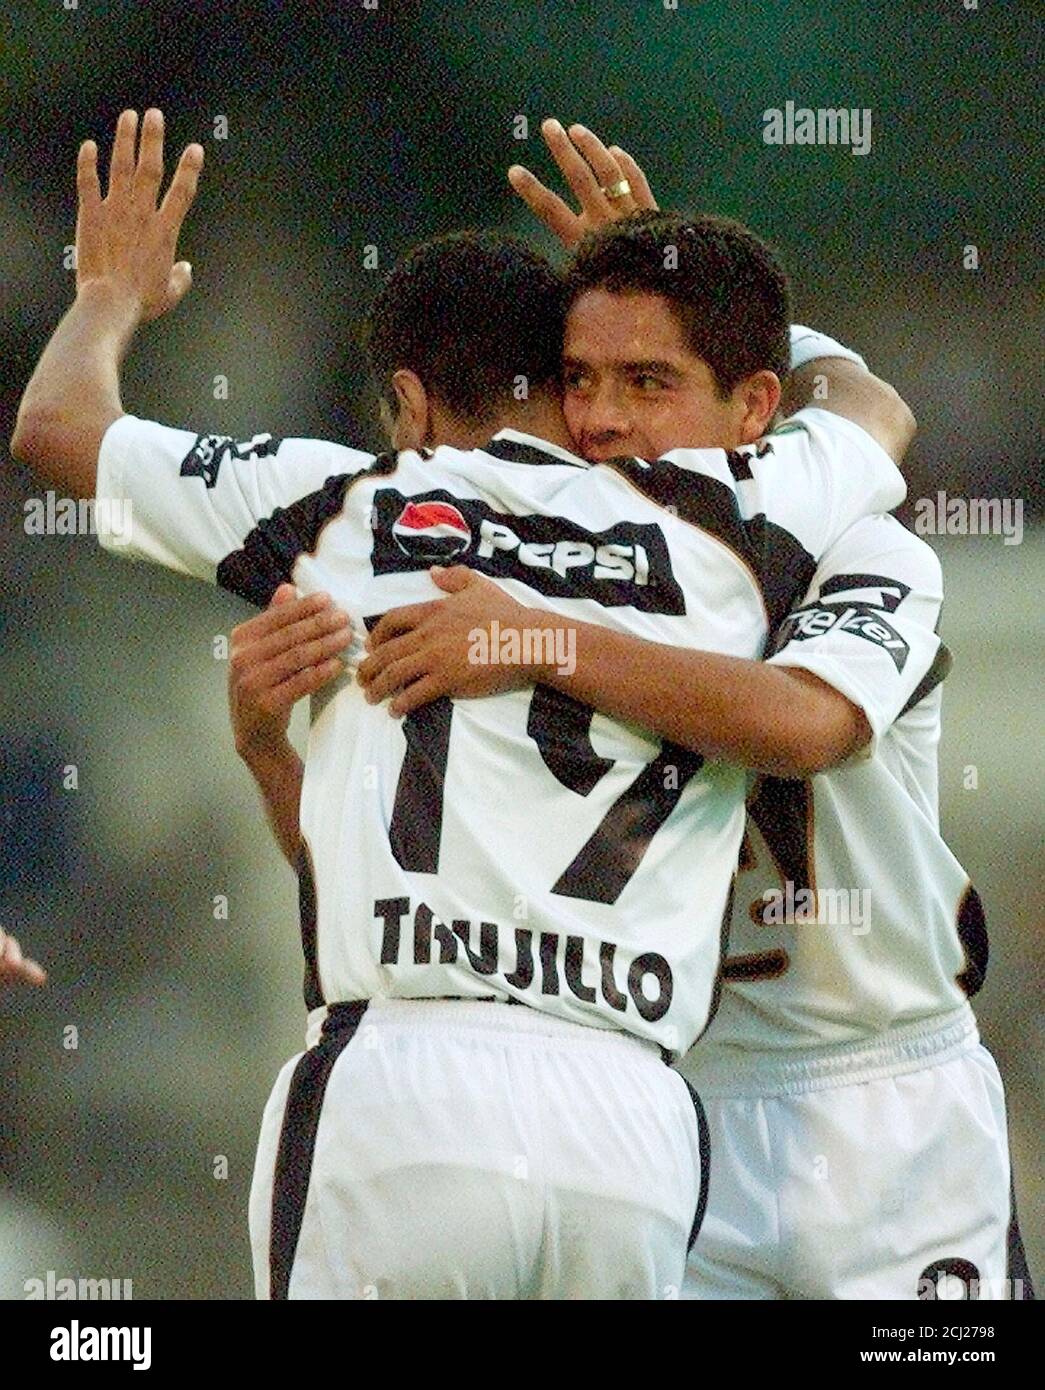 El delantero de Pumas Marino Trujillo (R) celebra su tercer gol contra  Chivas con el compañero de equipo Luis Ignacio Gonsalez, durante la segunda  mitad de su encuentro de invierno 2002 en